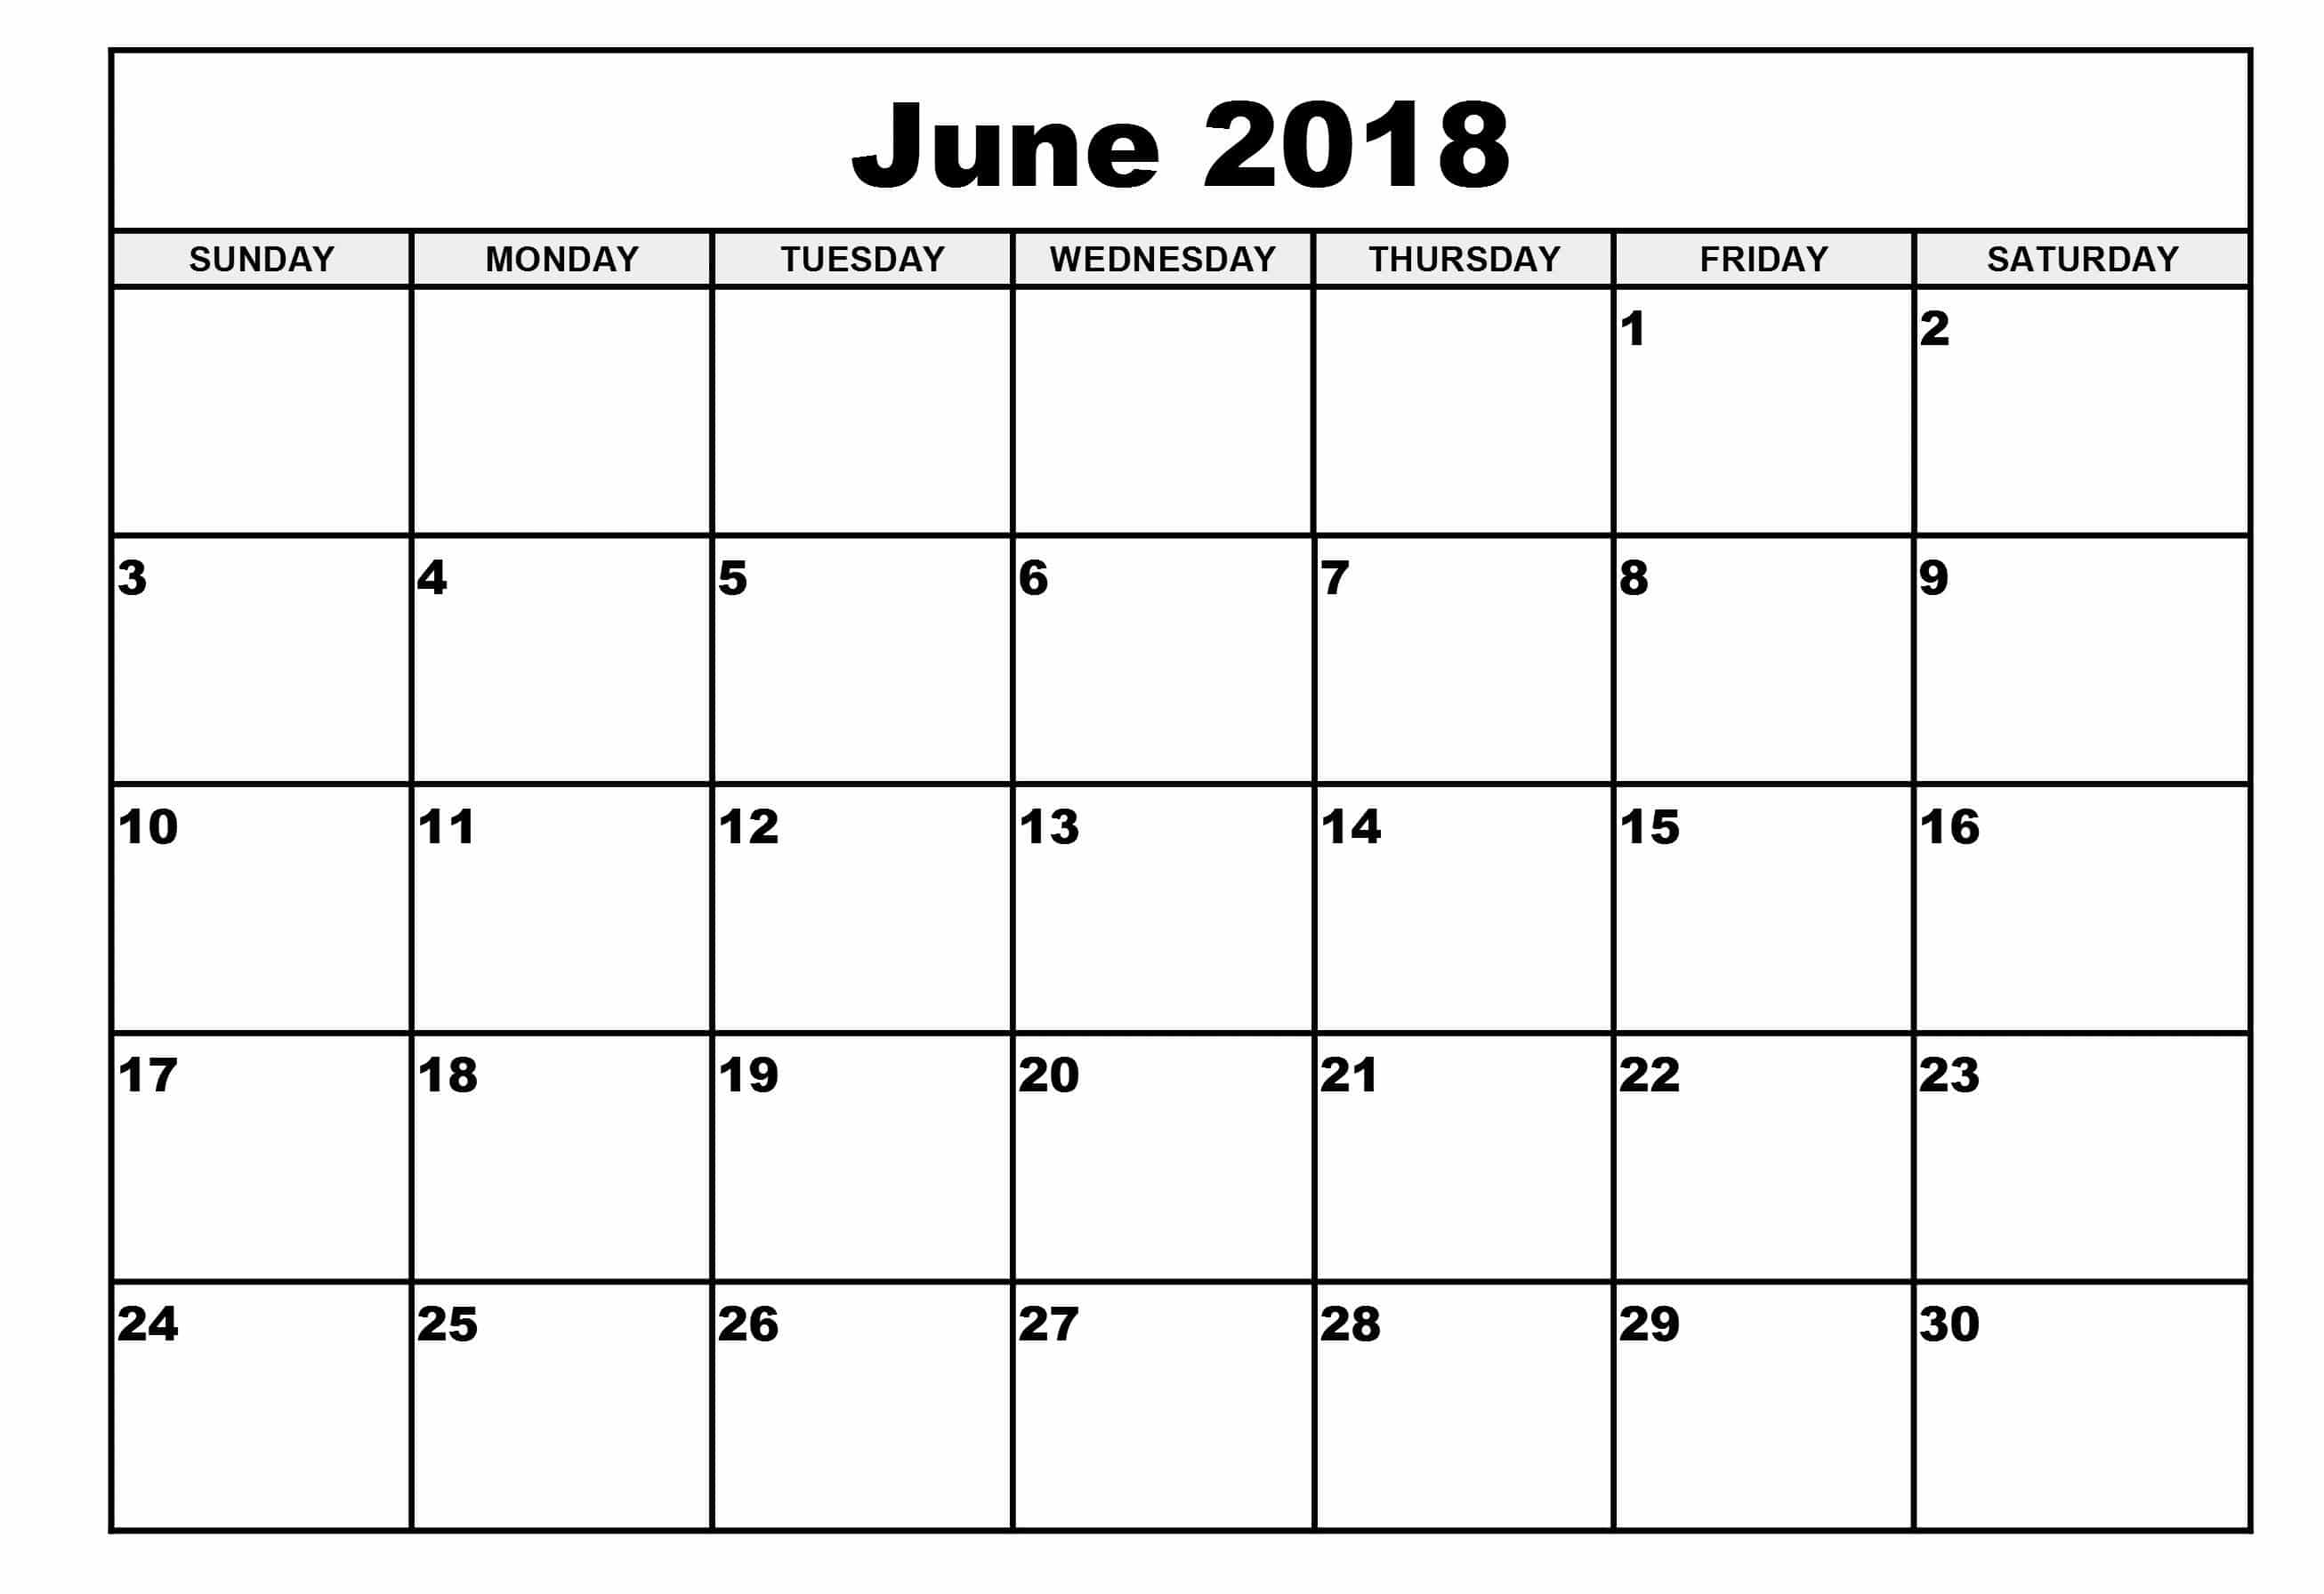 june-2018-monthly-calendar-desk-template-oppidan-library